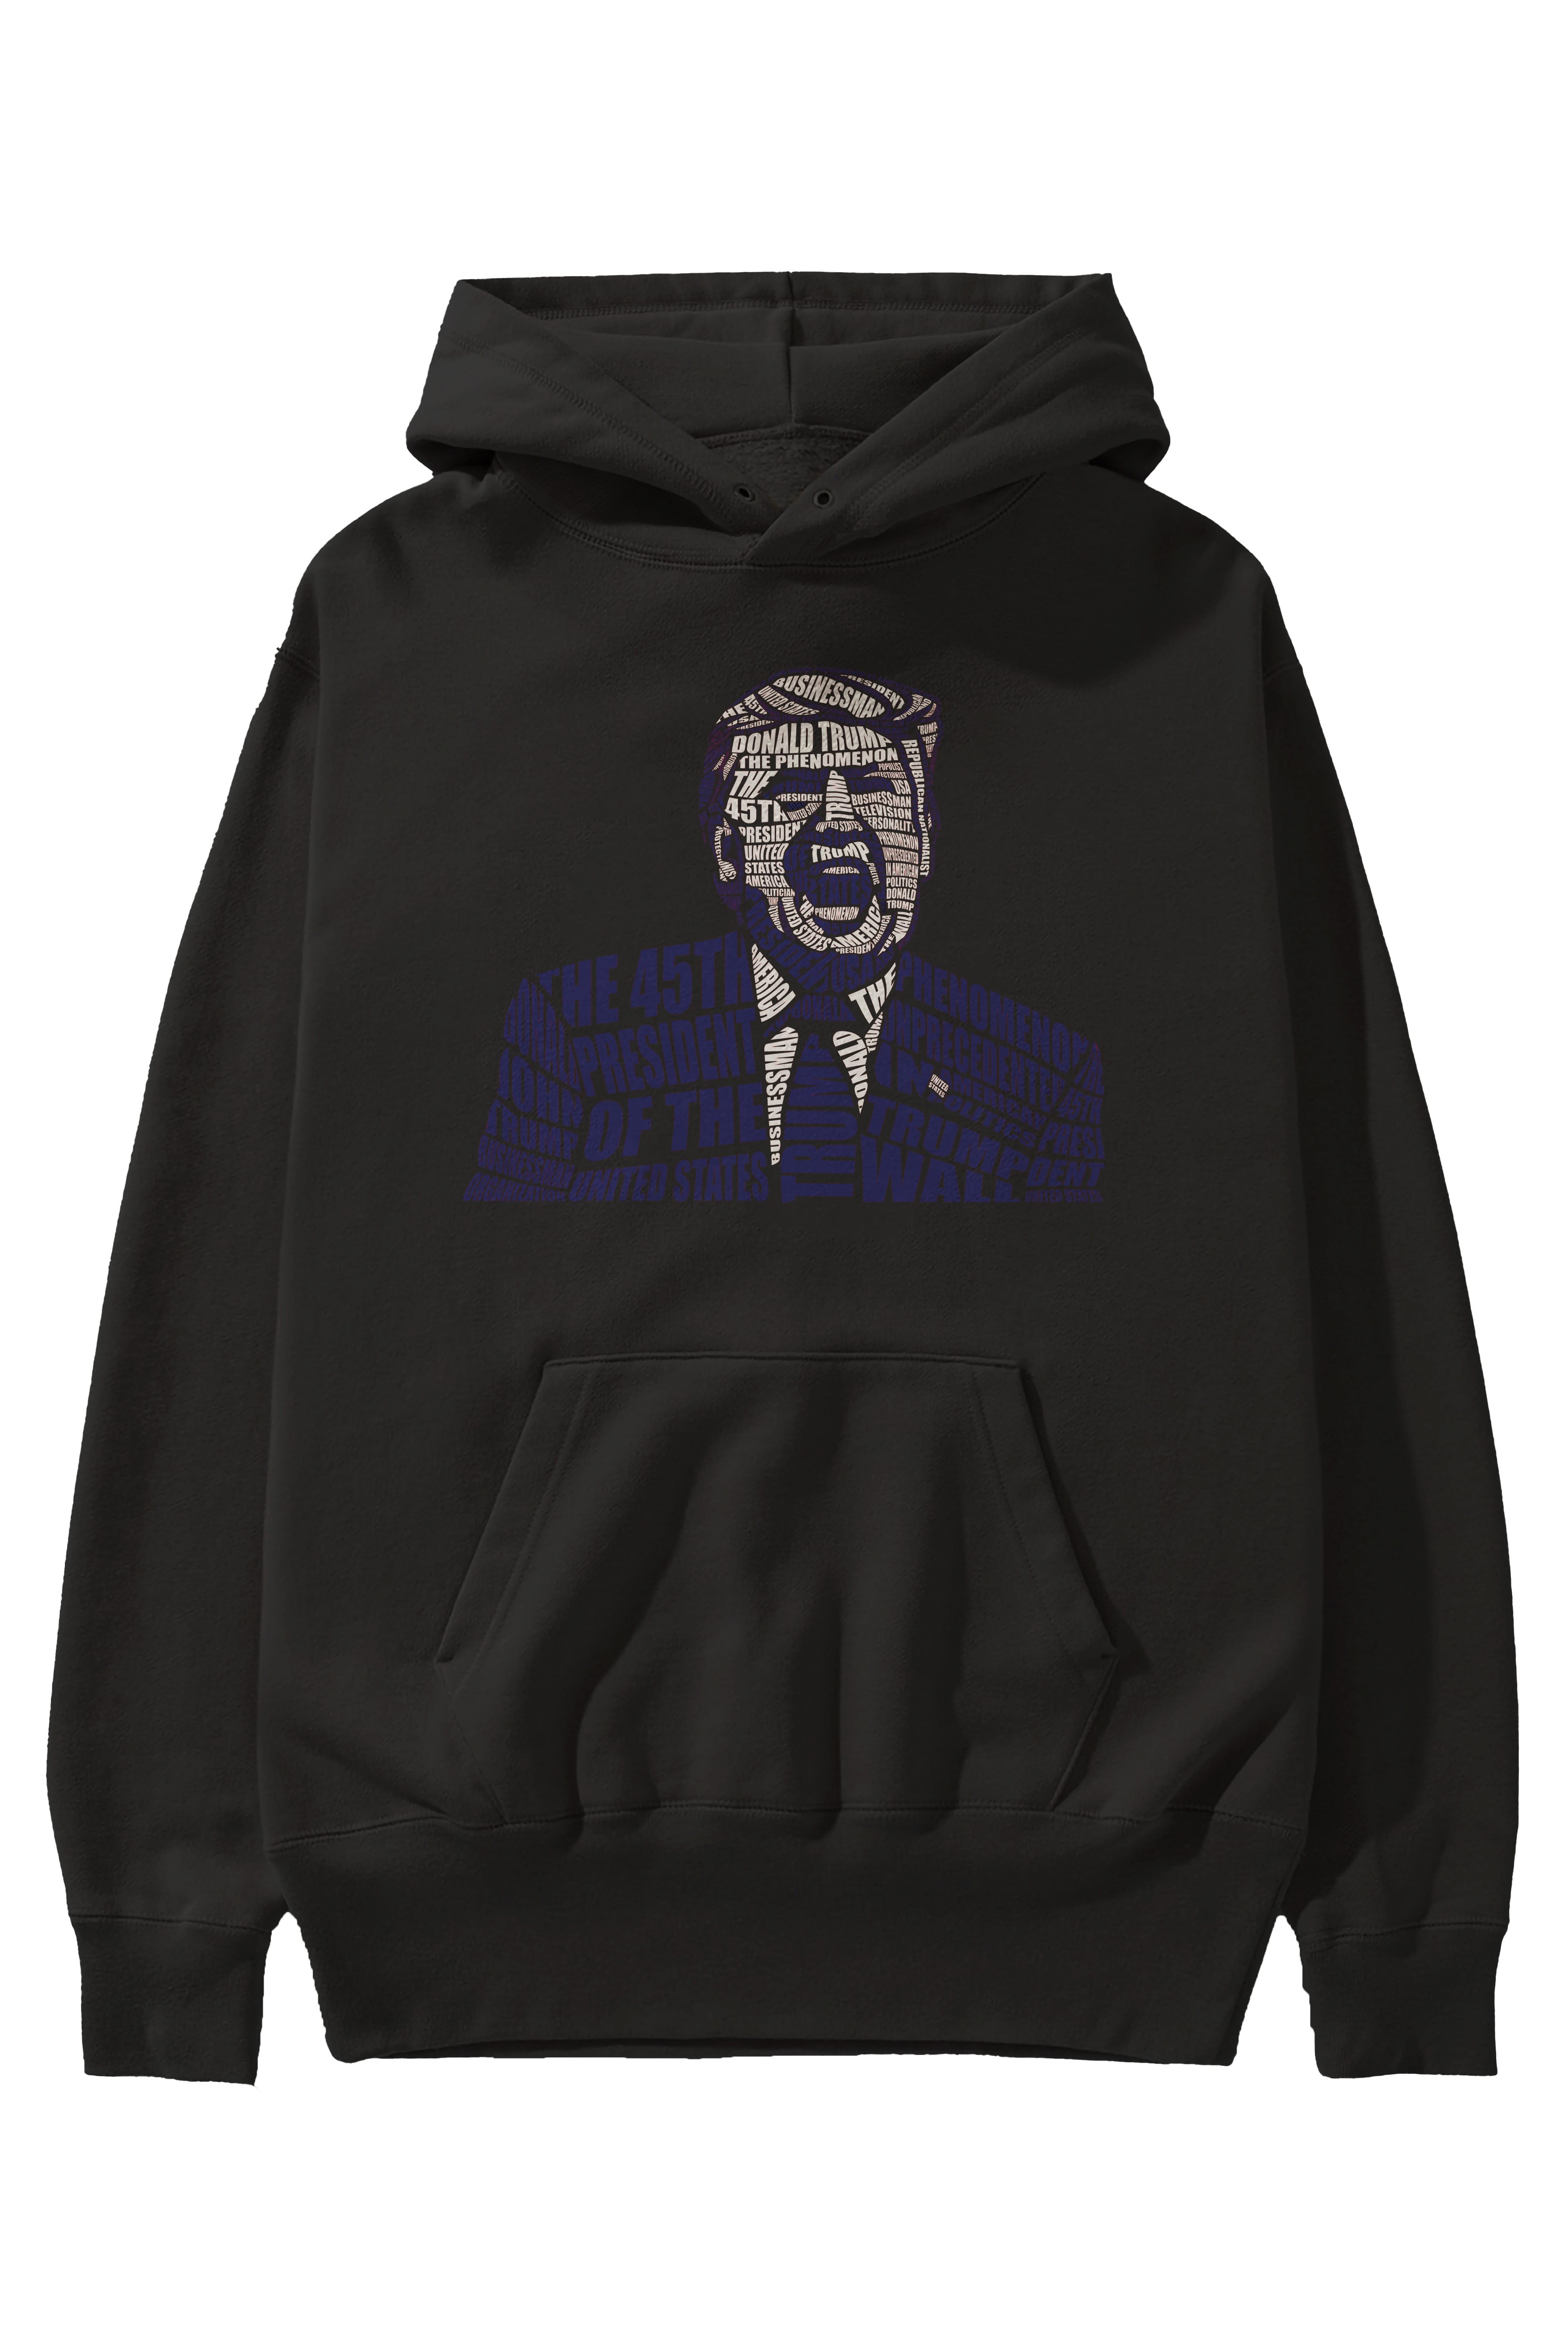 Trump Calligram Ön Baskılı Hoodie Oversize Kapüşonlu Sweatshirt Erkek Kadın Unisex